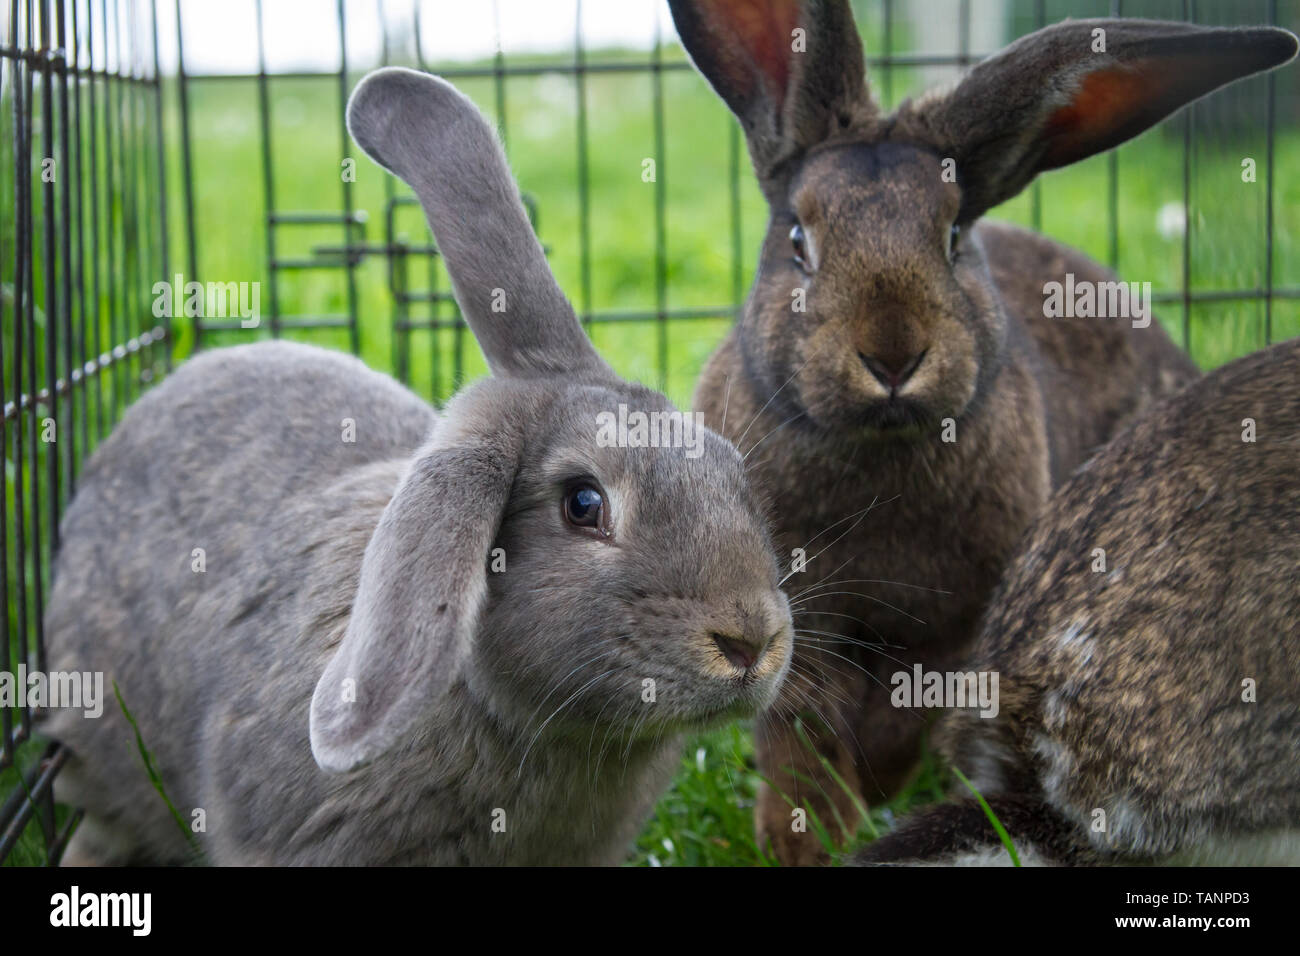 Los conejos comen hierba en un prado, estando en una jaula. Foto de stock